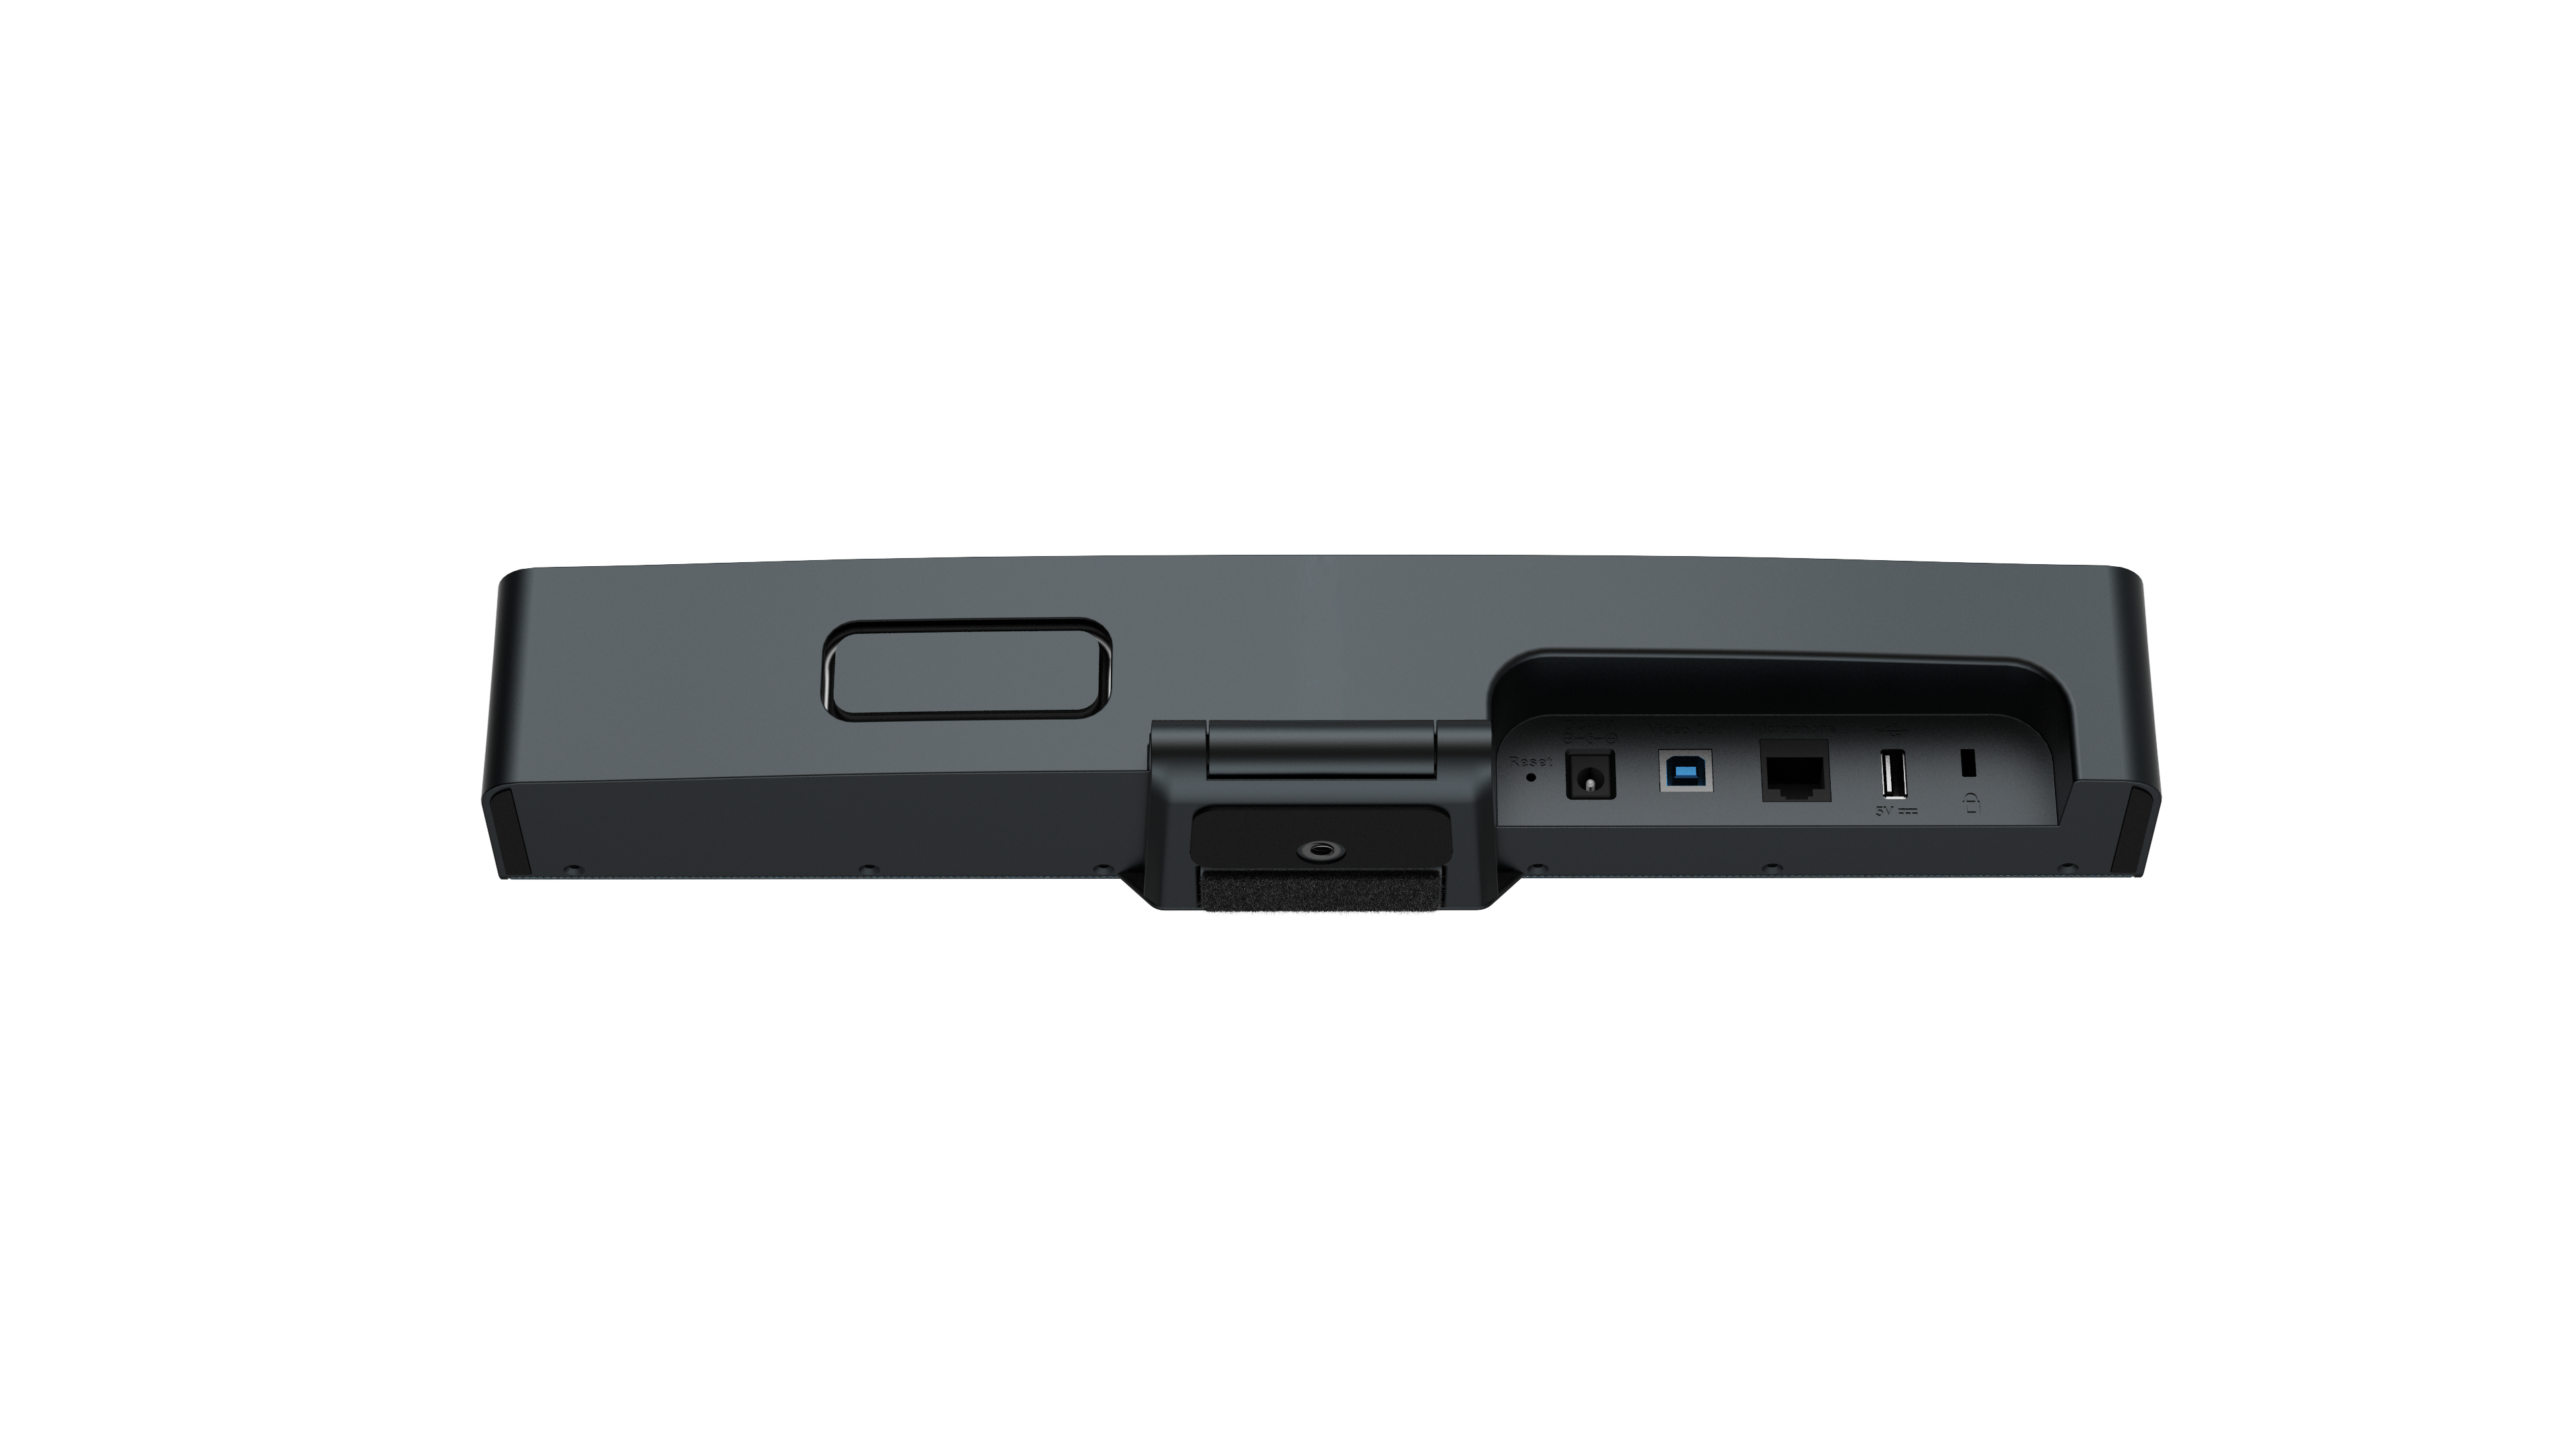 Yealink UVC34 - All-in-One-USB-Videobar - 4K - WiFi - integrierte Mikrofone und Lautsprecher -  für kleine Räume und Huddle Rooms